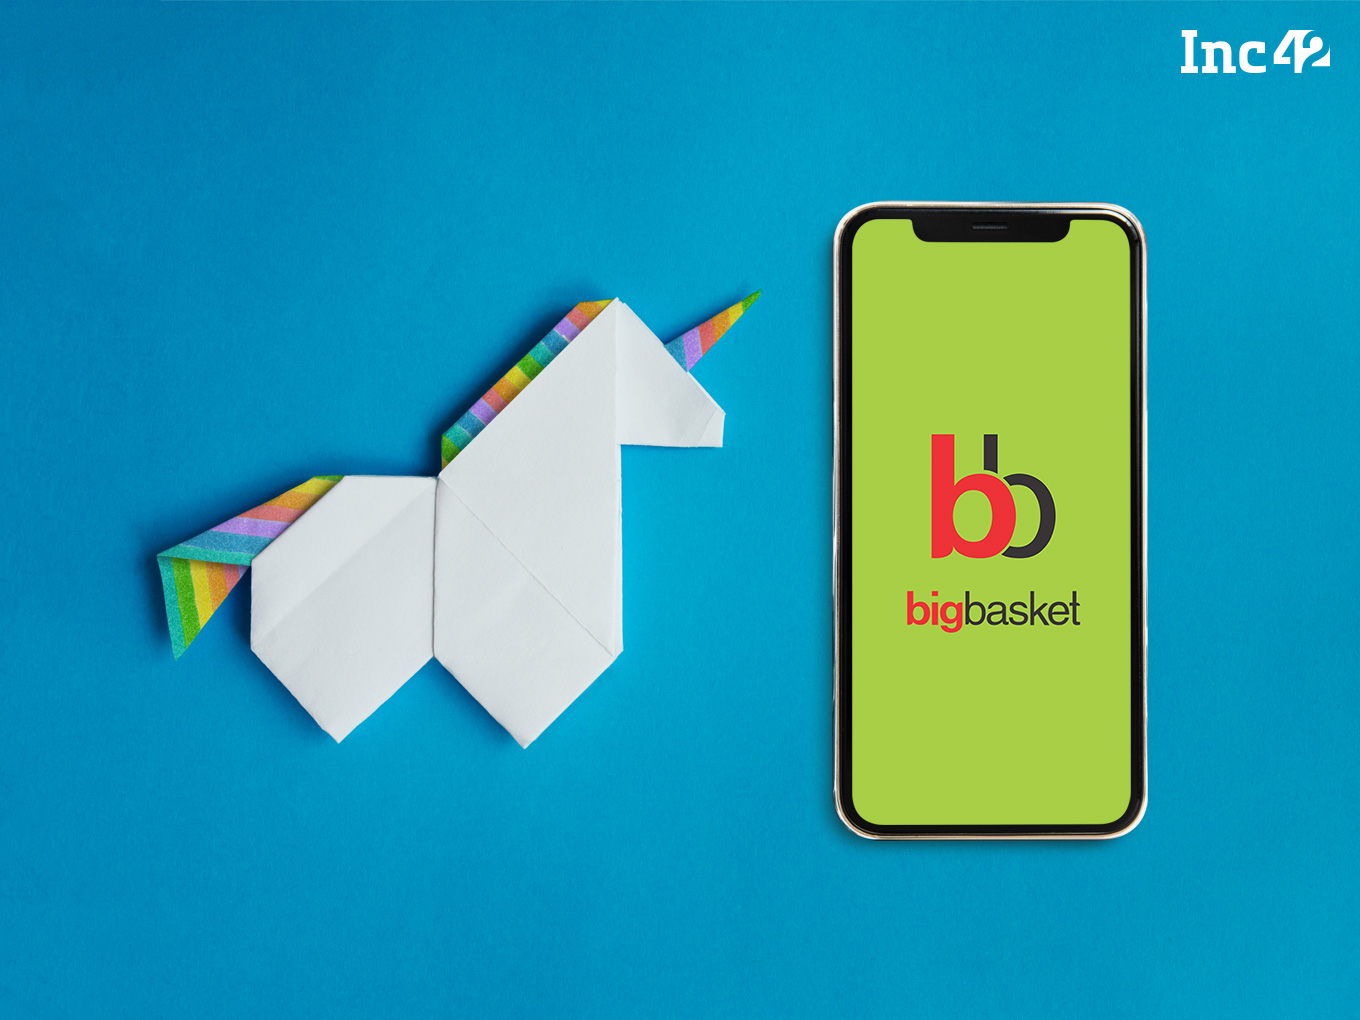 Bigbasket app: What Is BigBasket’s Business Model?